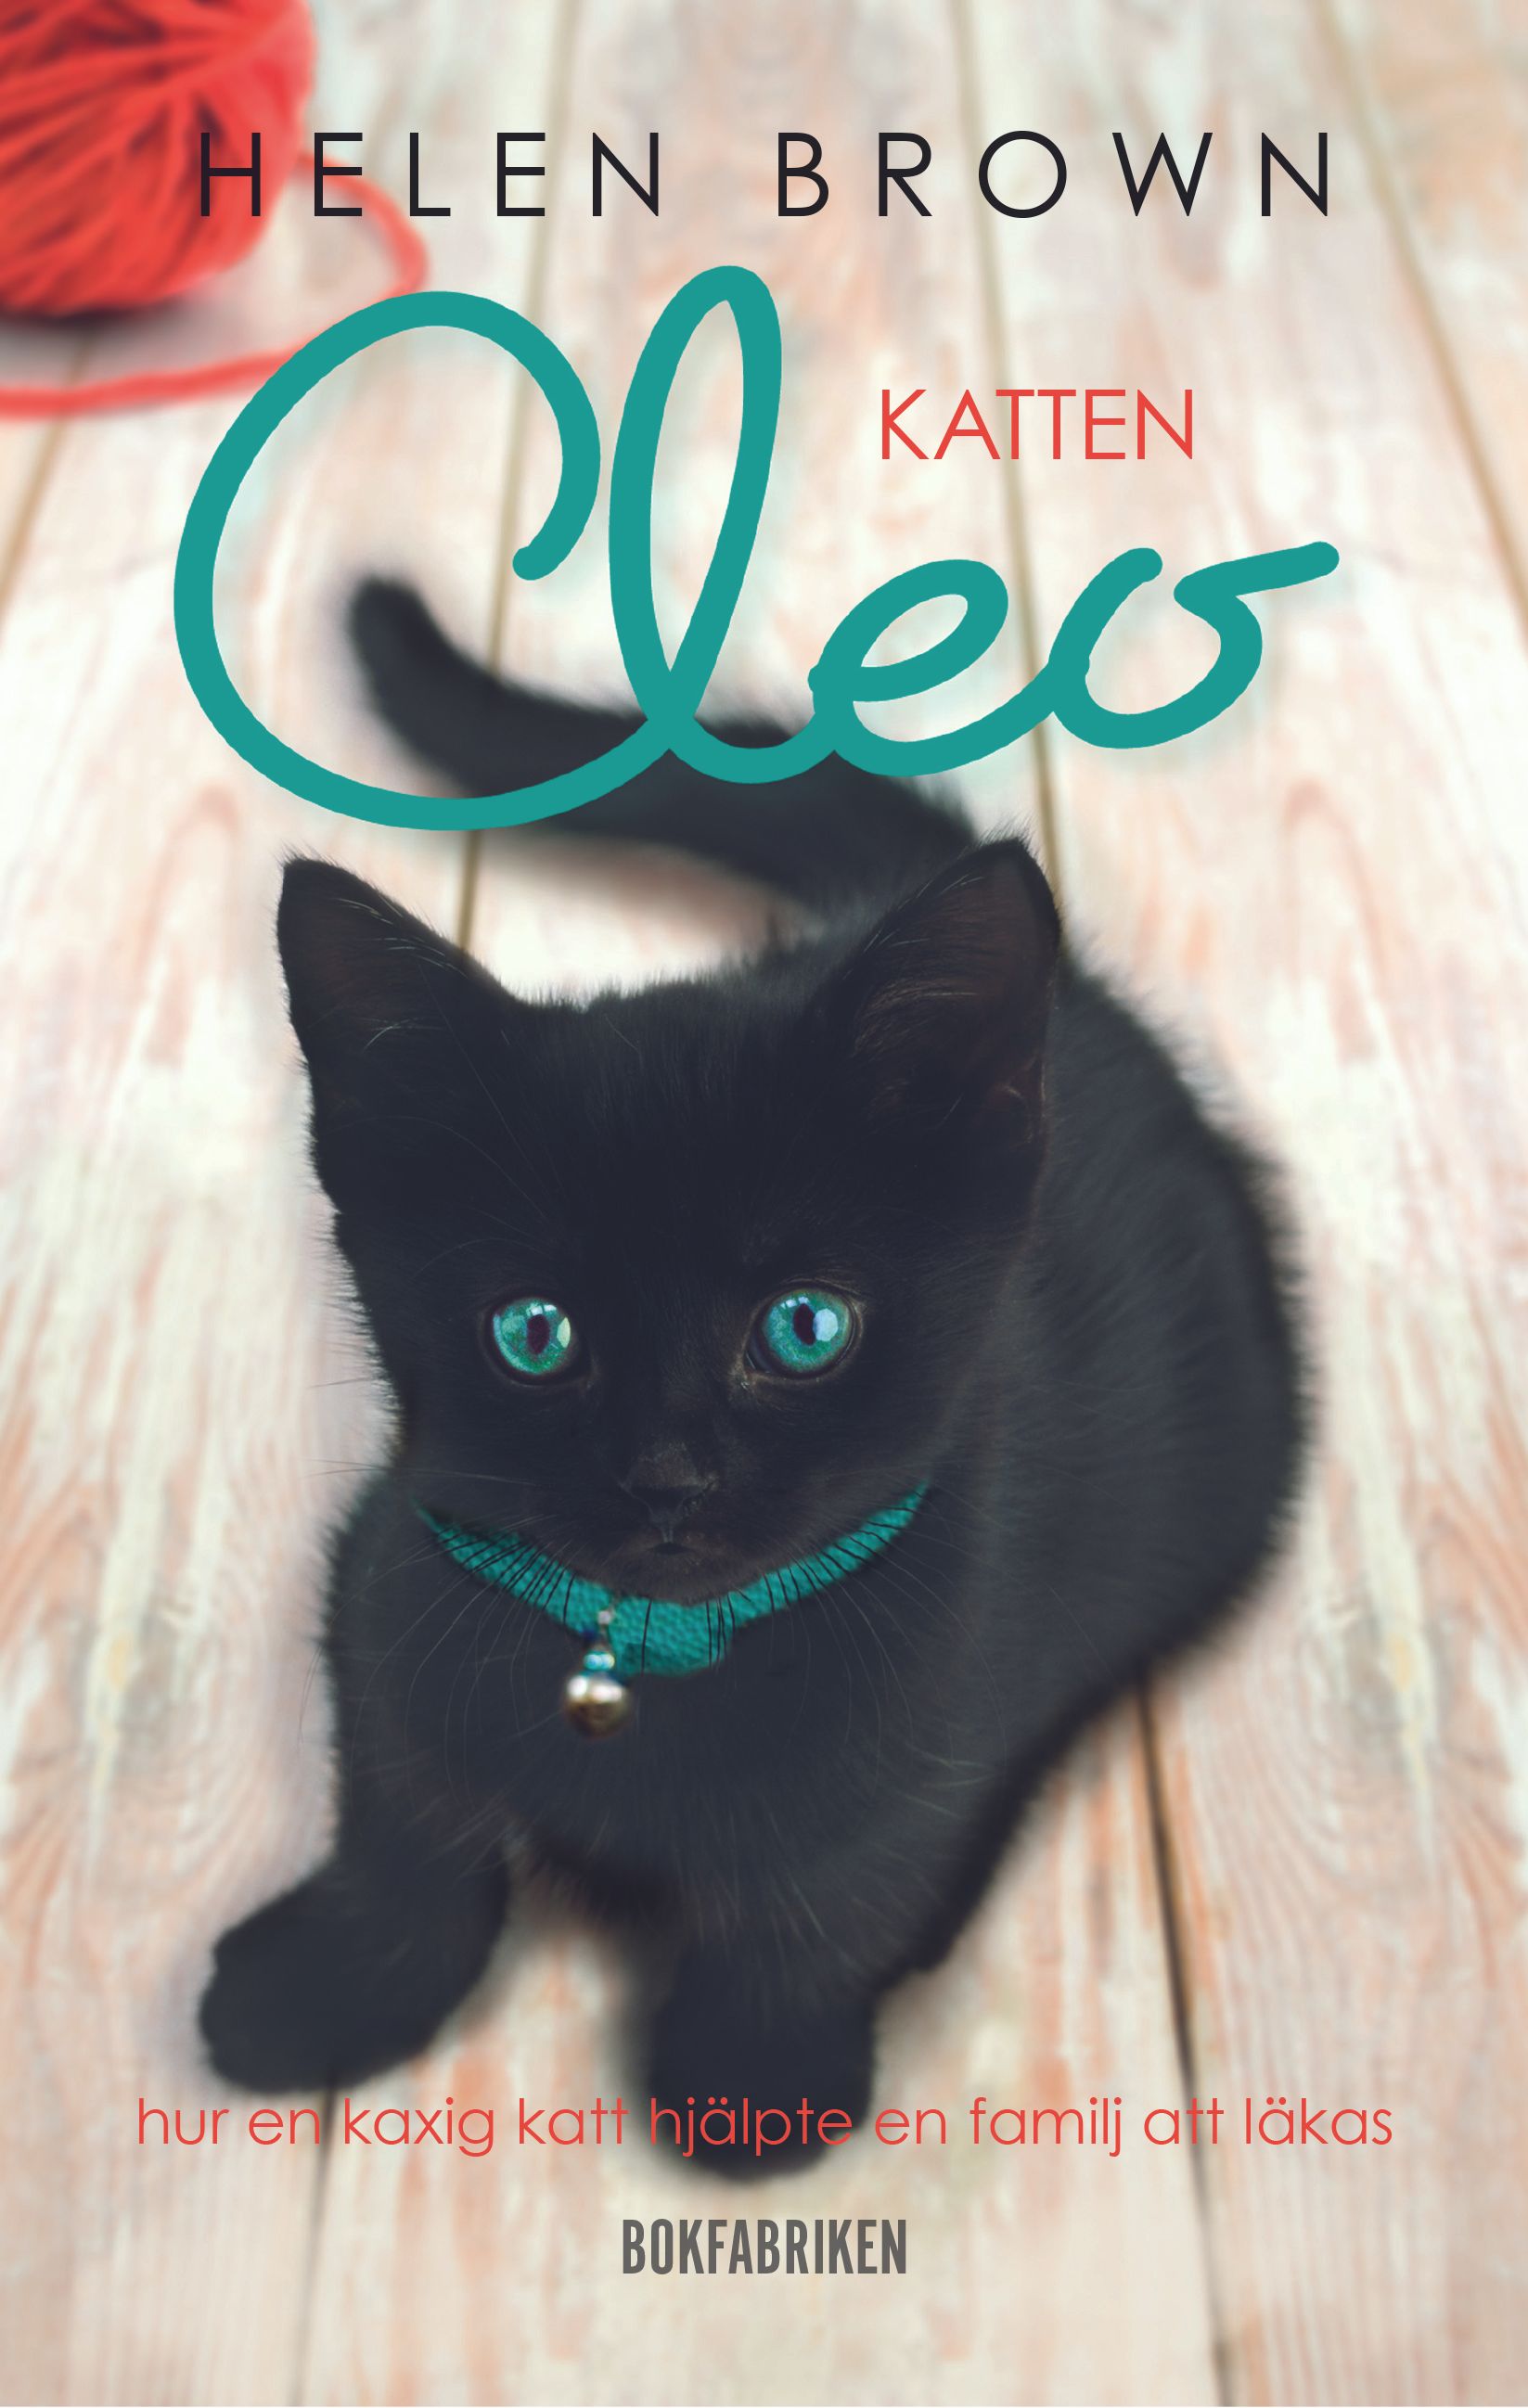 Katten Cleo - Hur en kaxig katt hjälpte en familj att läkas, e-bok av Helen Brown